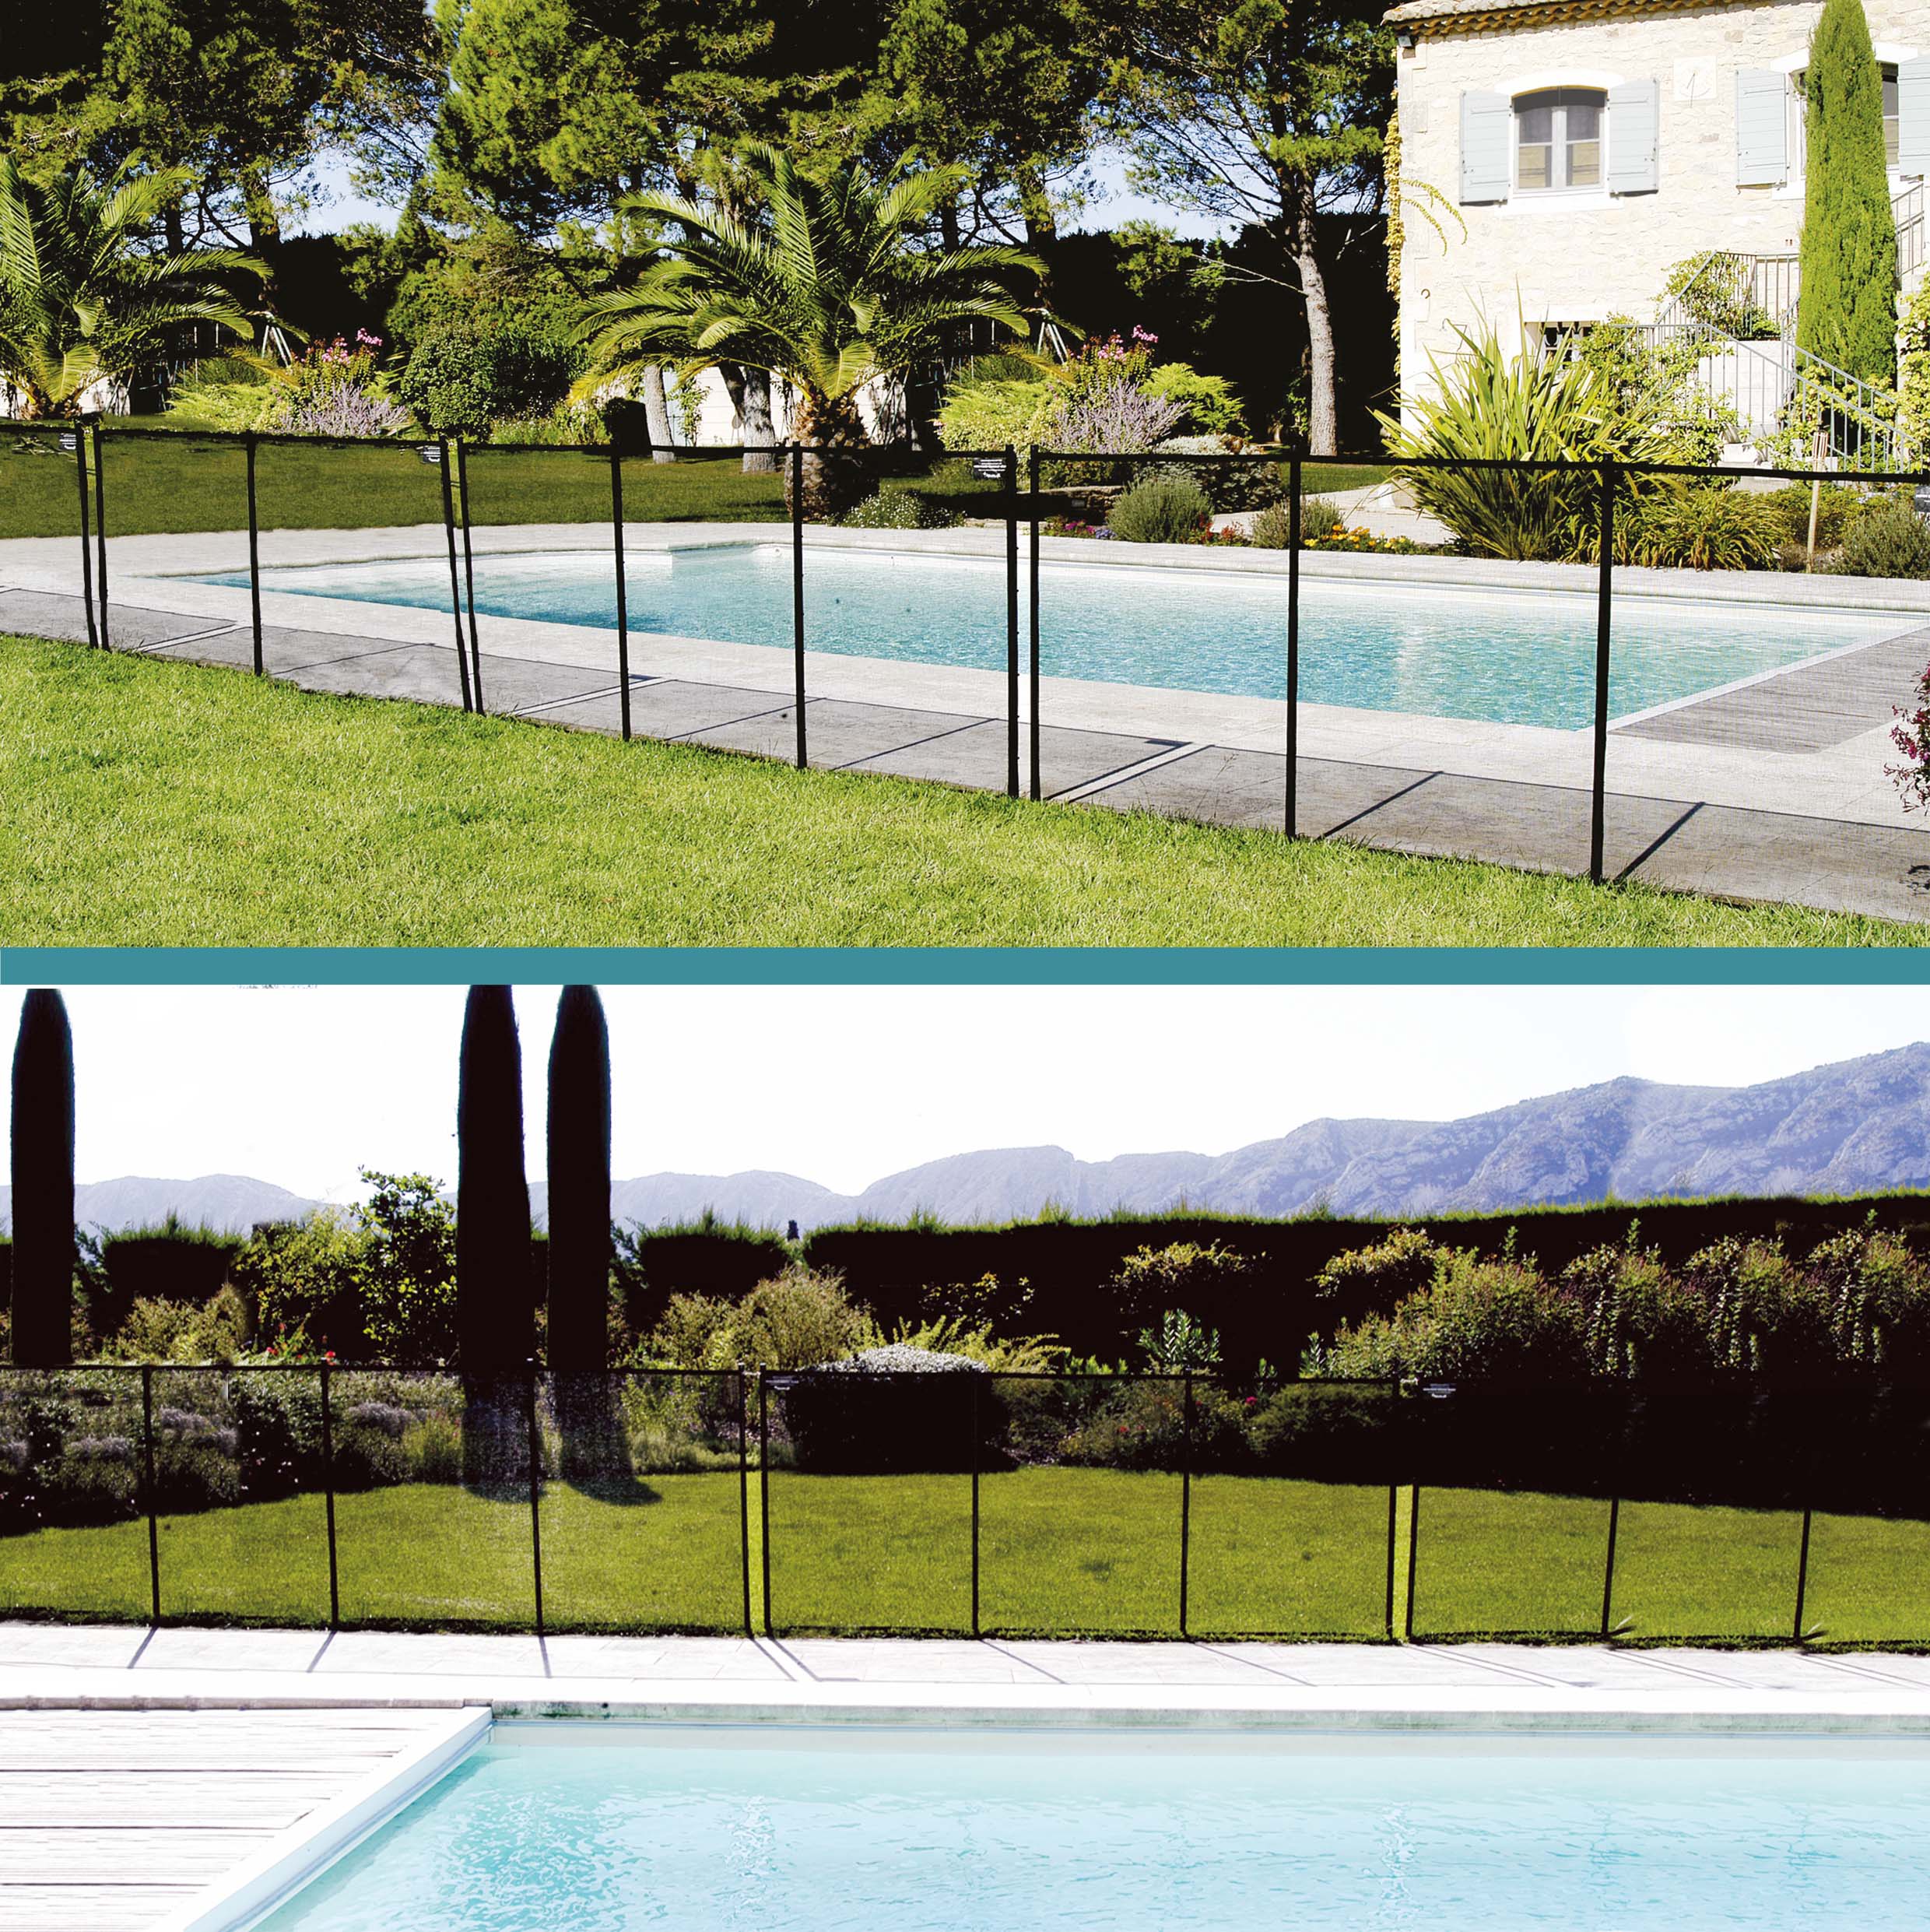 Couvertures piscine, version sécurité et hivernage, en PVC opaque,  fabrication sur mesure. Spa & Piscine